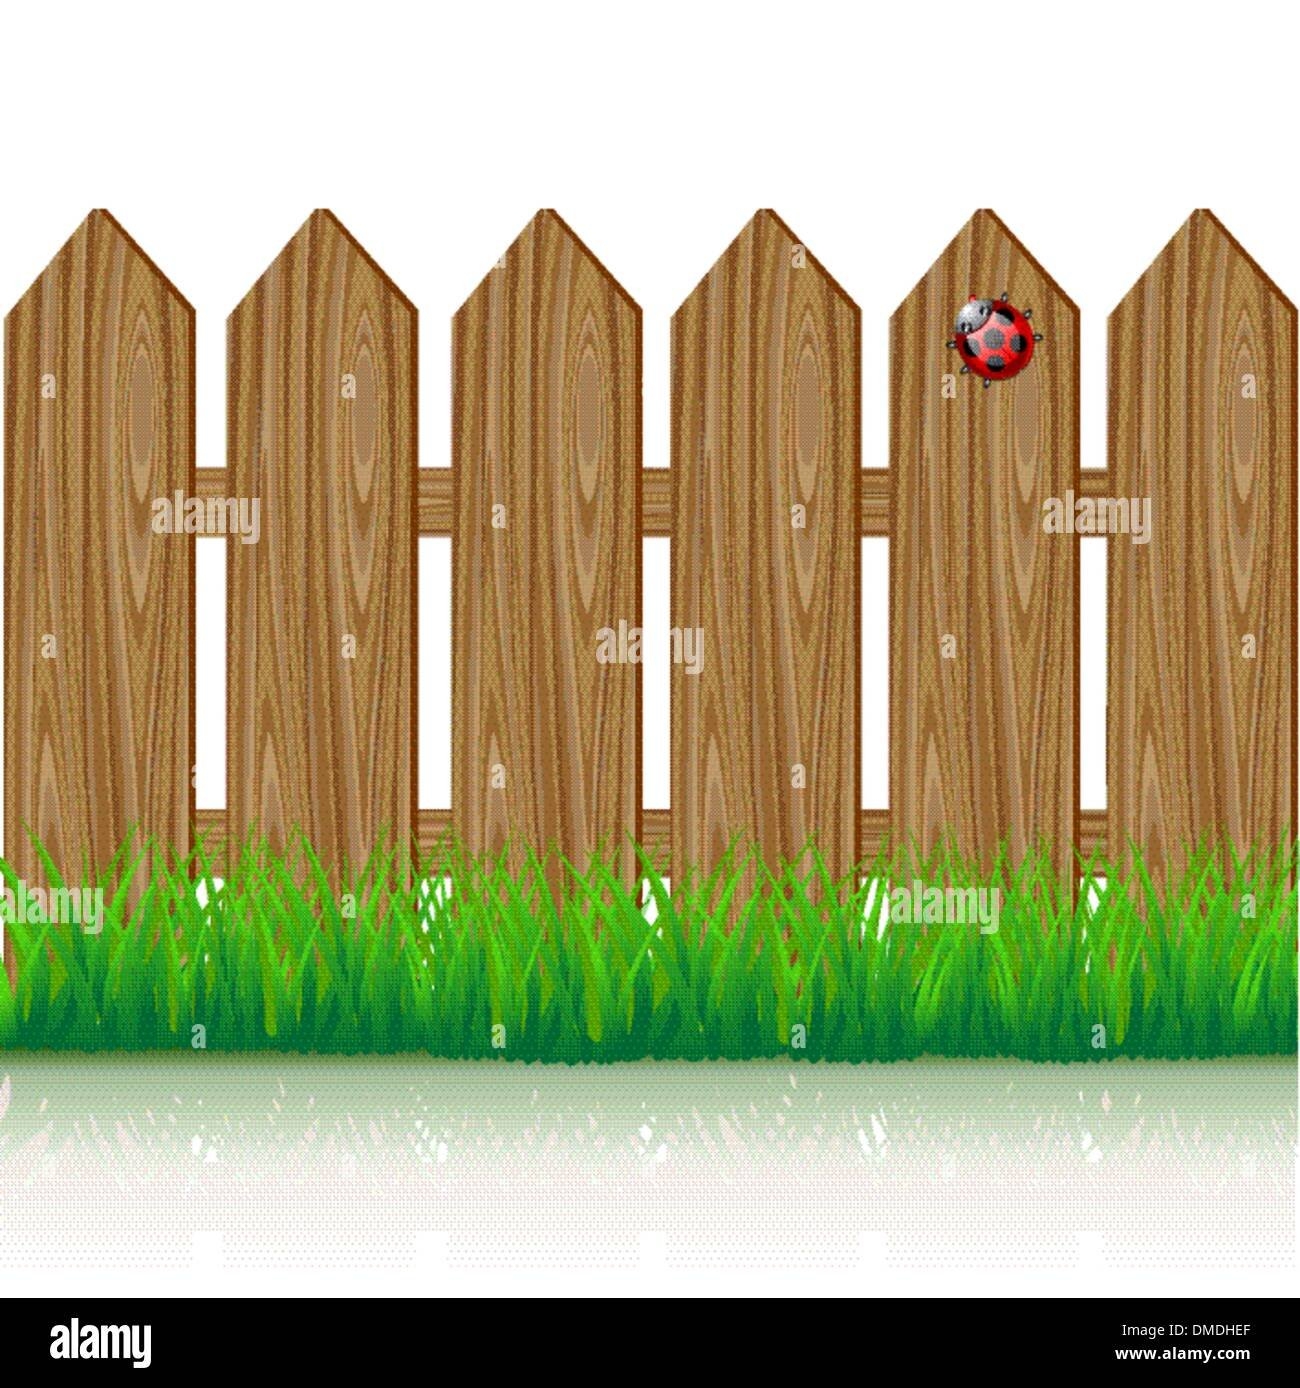 Забор картинка для огорода. Забор нарисованный. Забор деревянный мультяшный. Заборчик для печати. Забор для детей.